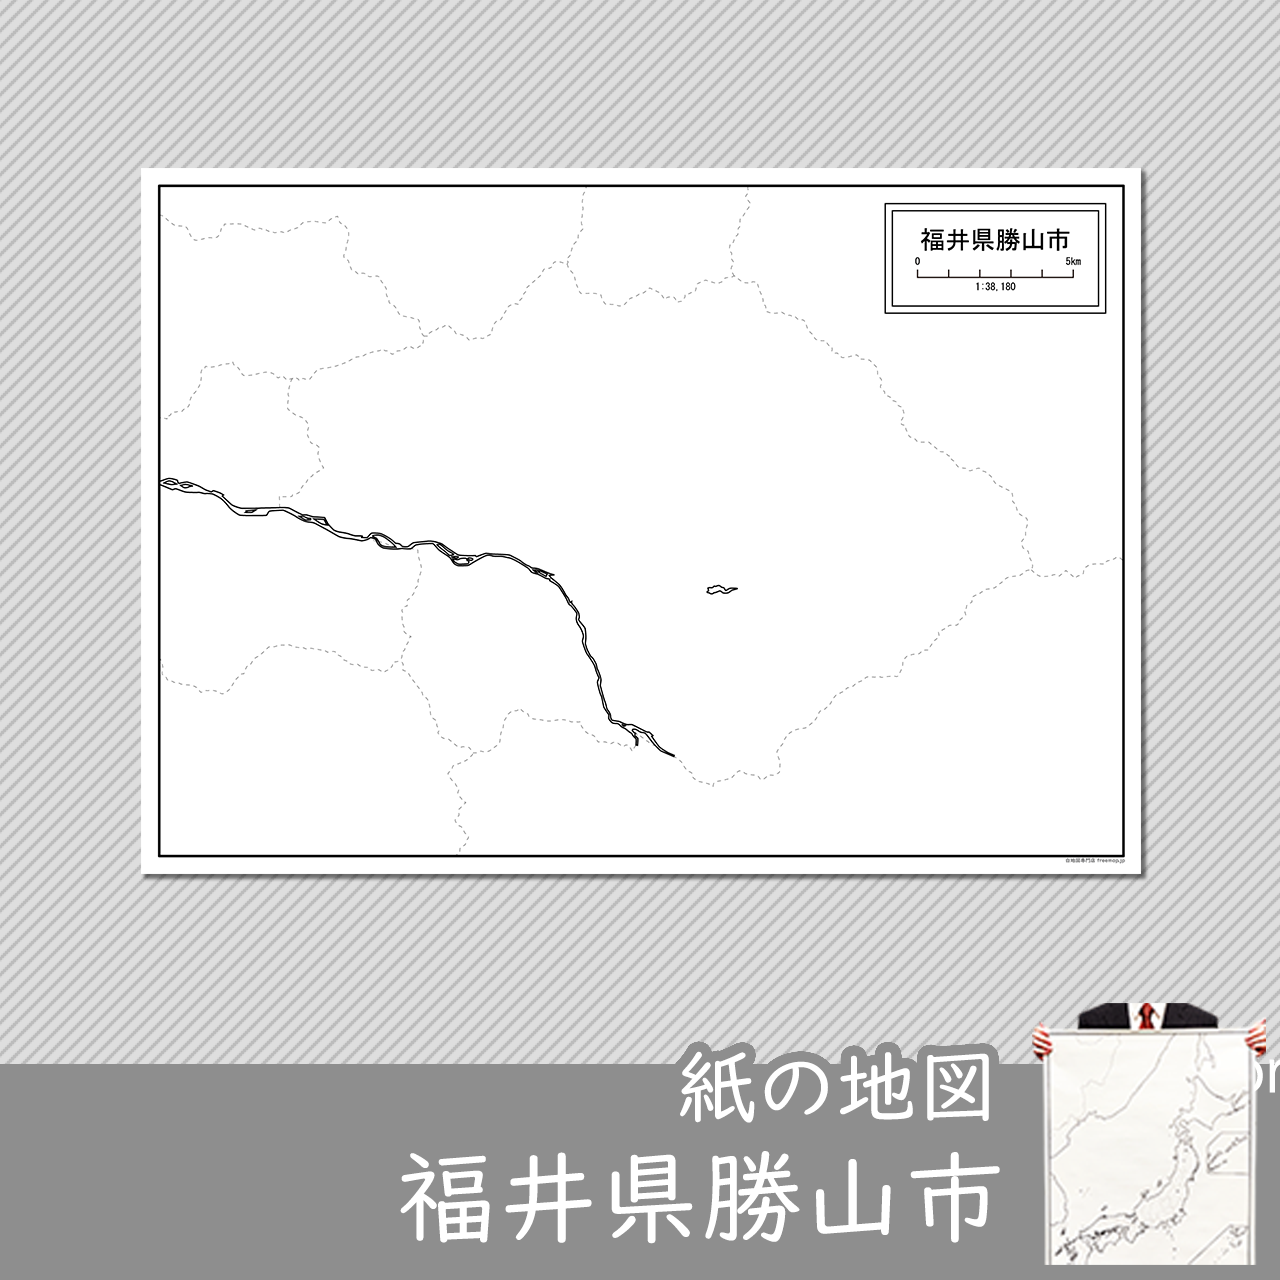 勝山市の紙の白地図のサムネイル